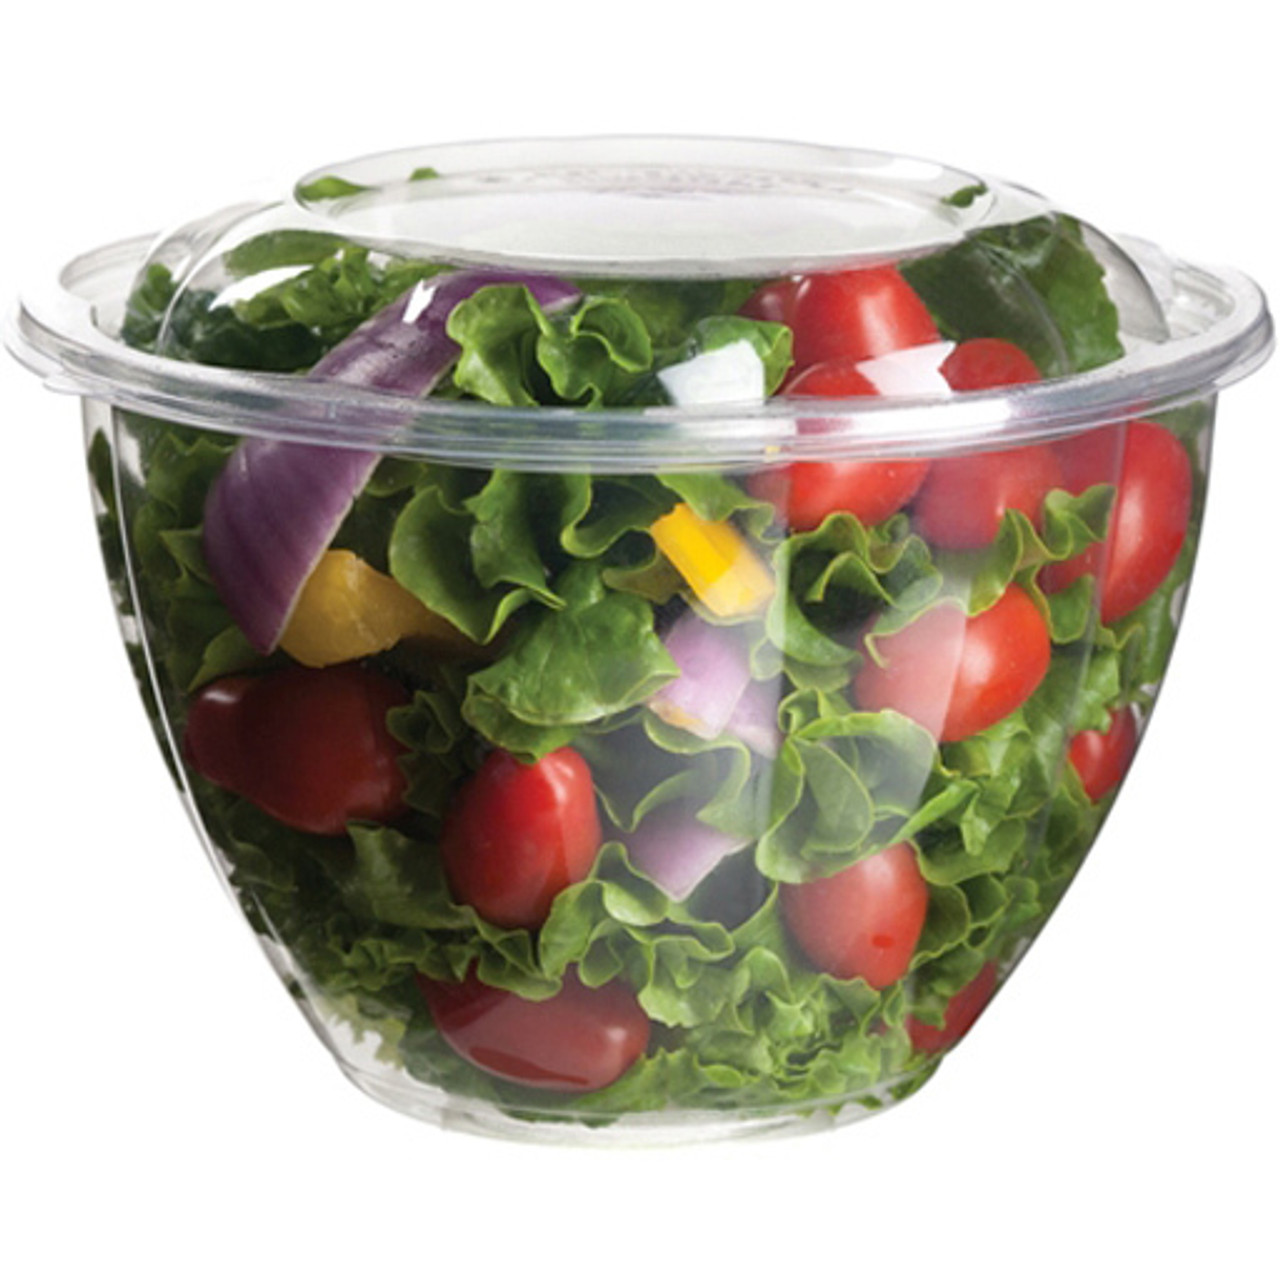 Floral Salad Bowl Base - 48 oz